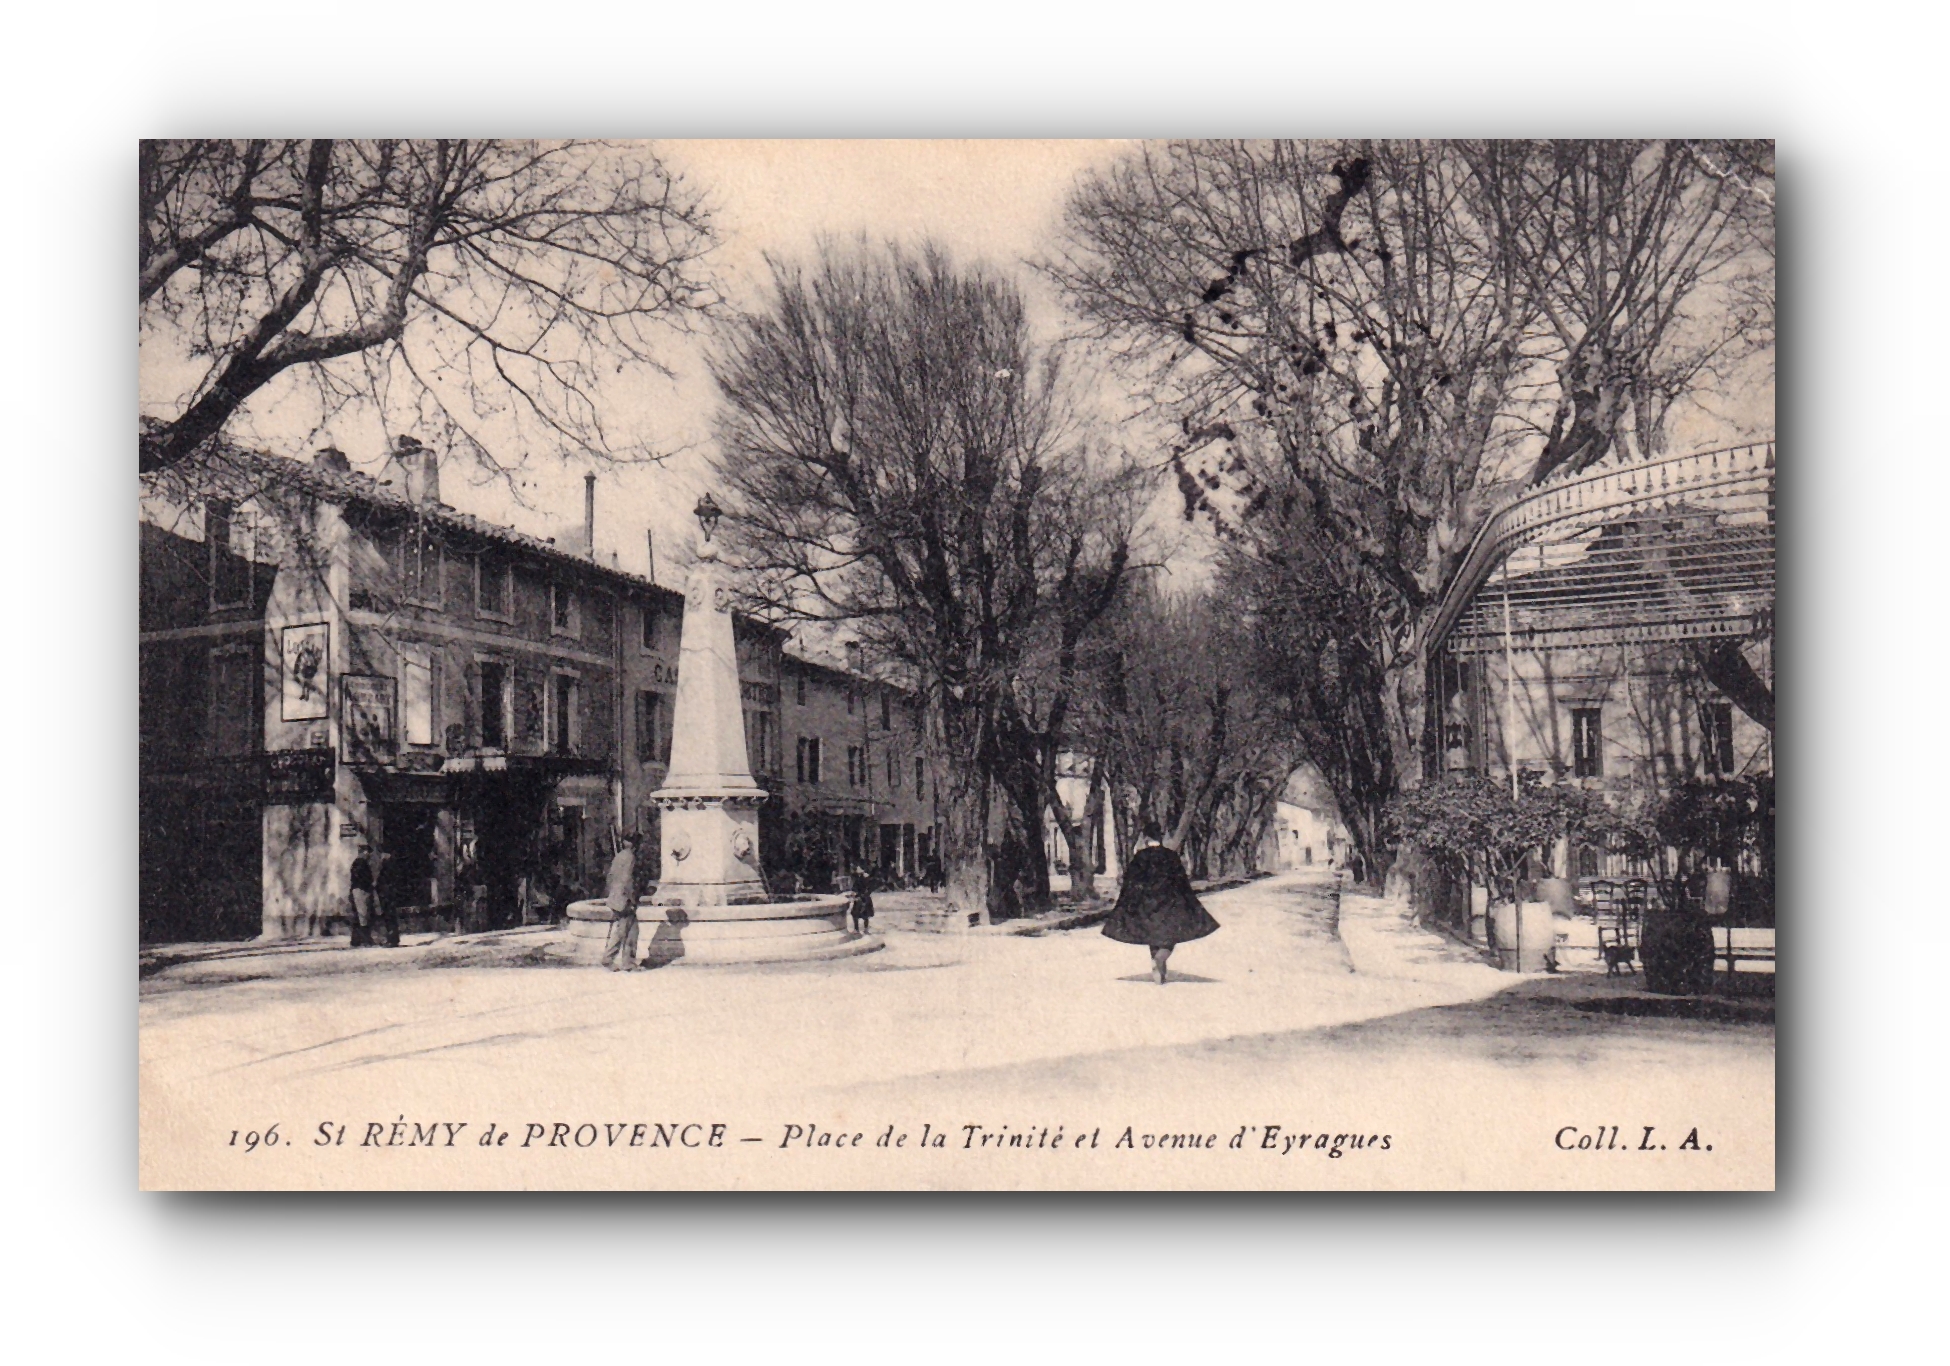 SAINT RÉMY de PROVENCE - Place de la Trinité et Avenue d'Eyragues -14.06.1913